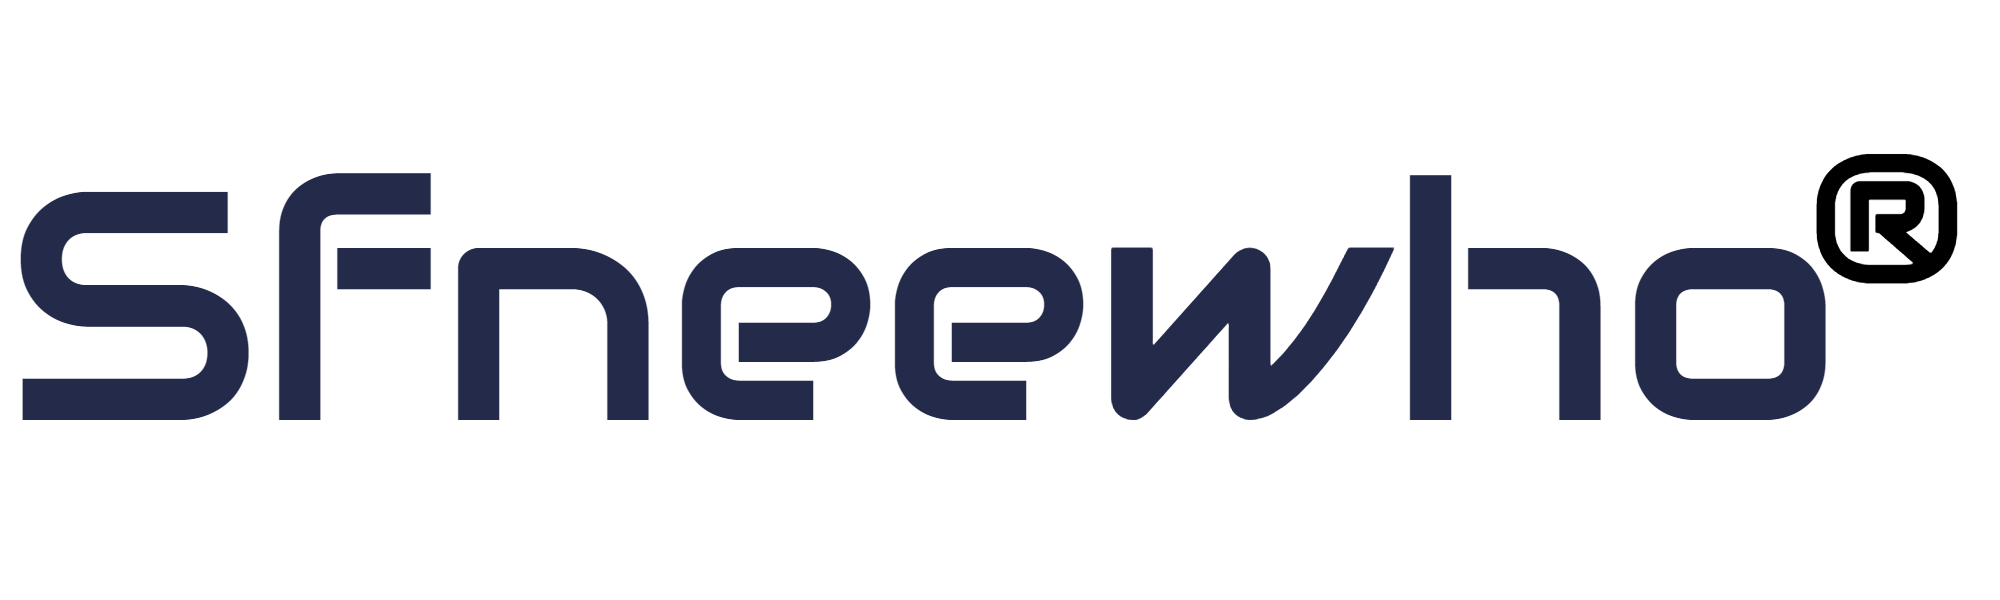 Neewho.com Brand Logo